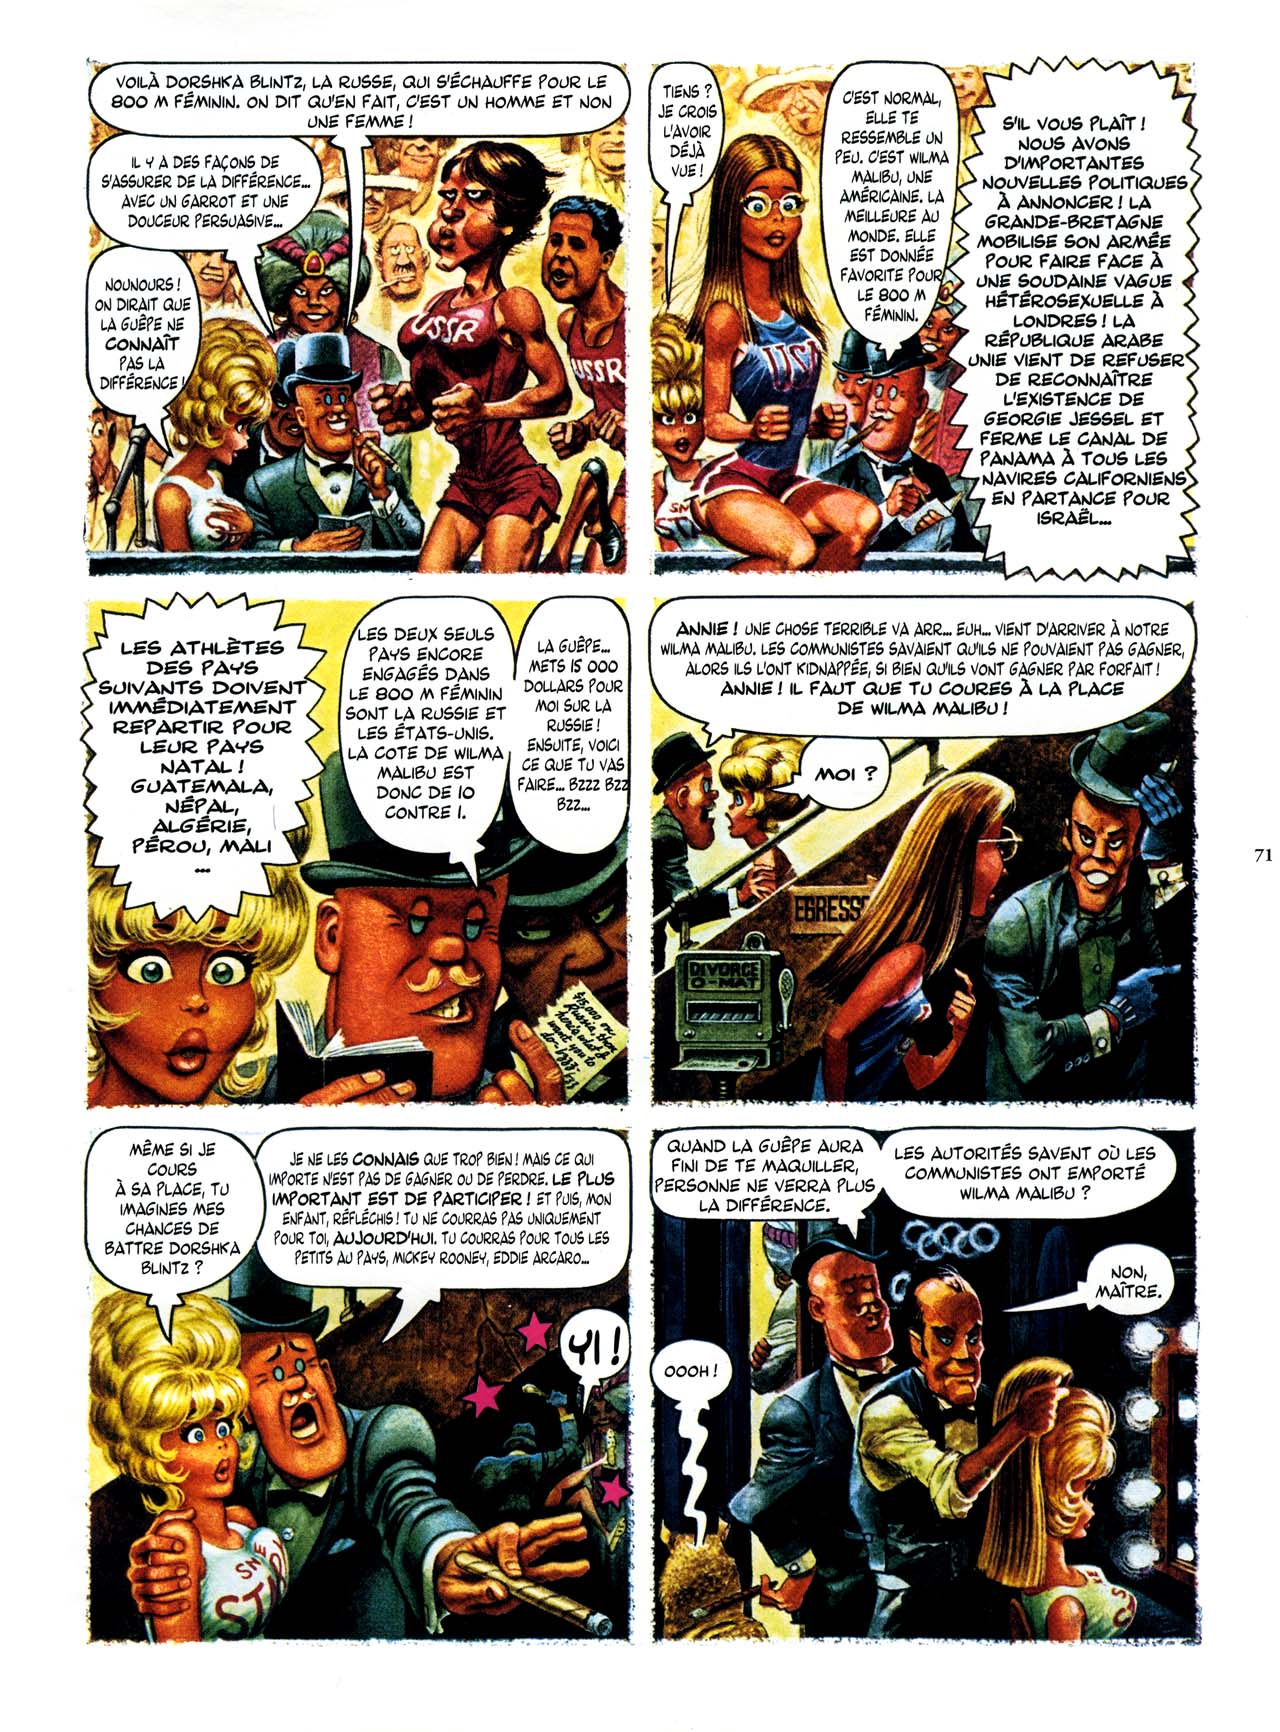 Playboys Little Annie Fanny Vol. 2 - 1965-1970 numero d'image 71